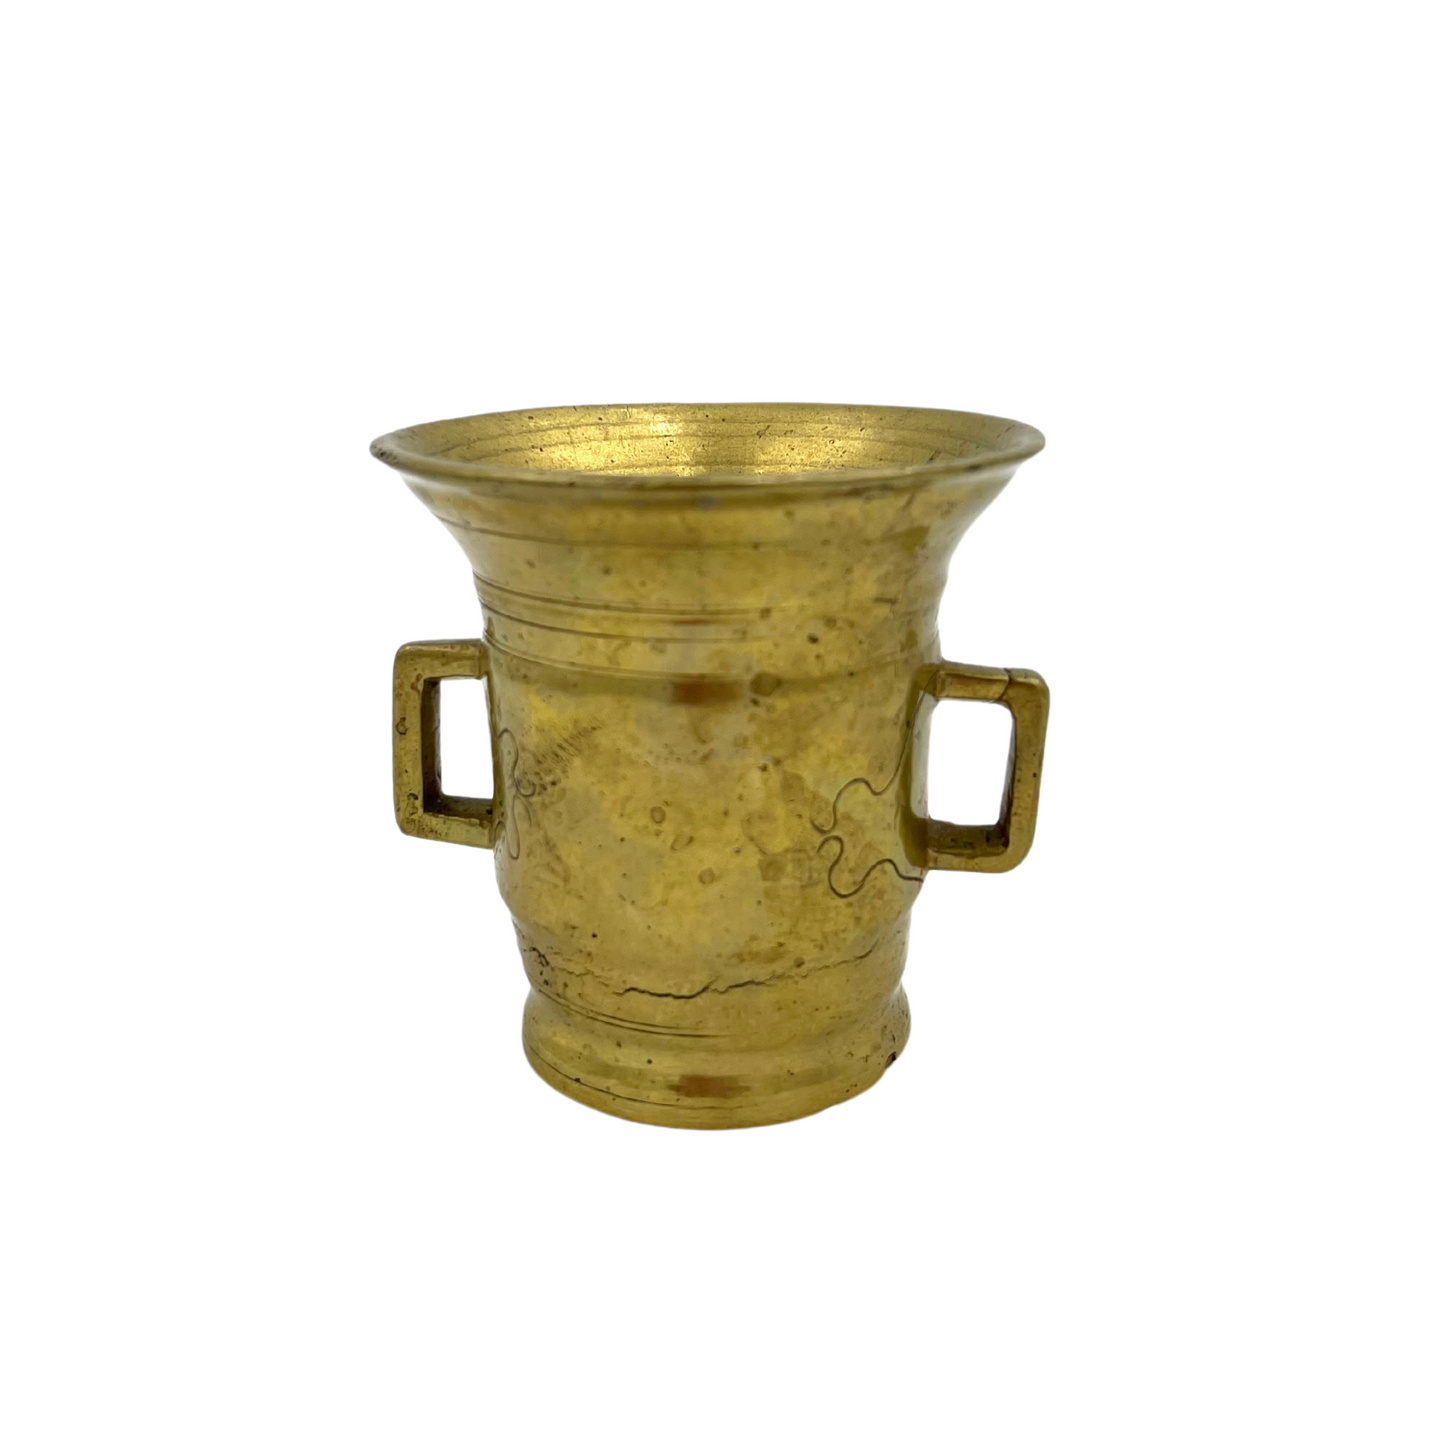 Antique Brass Apothecary Mortar & Pestle - 18th Century